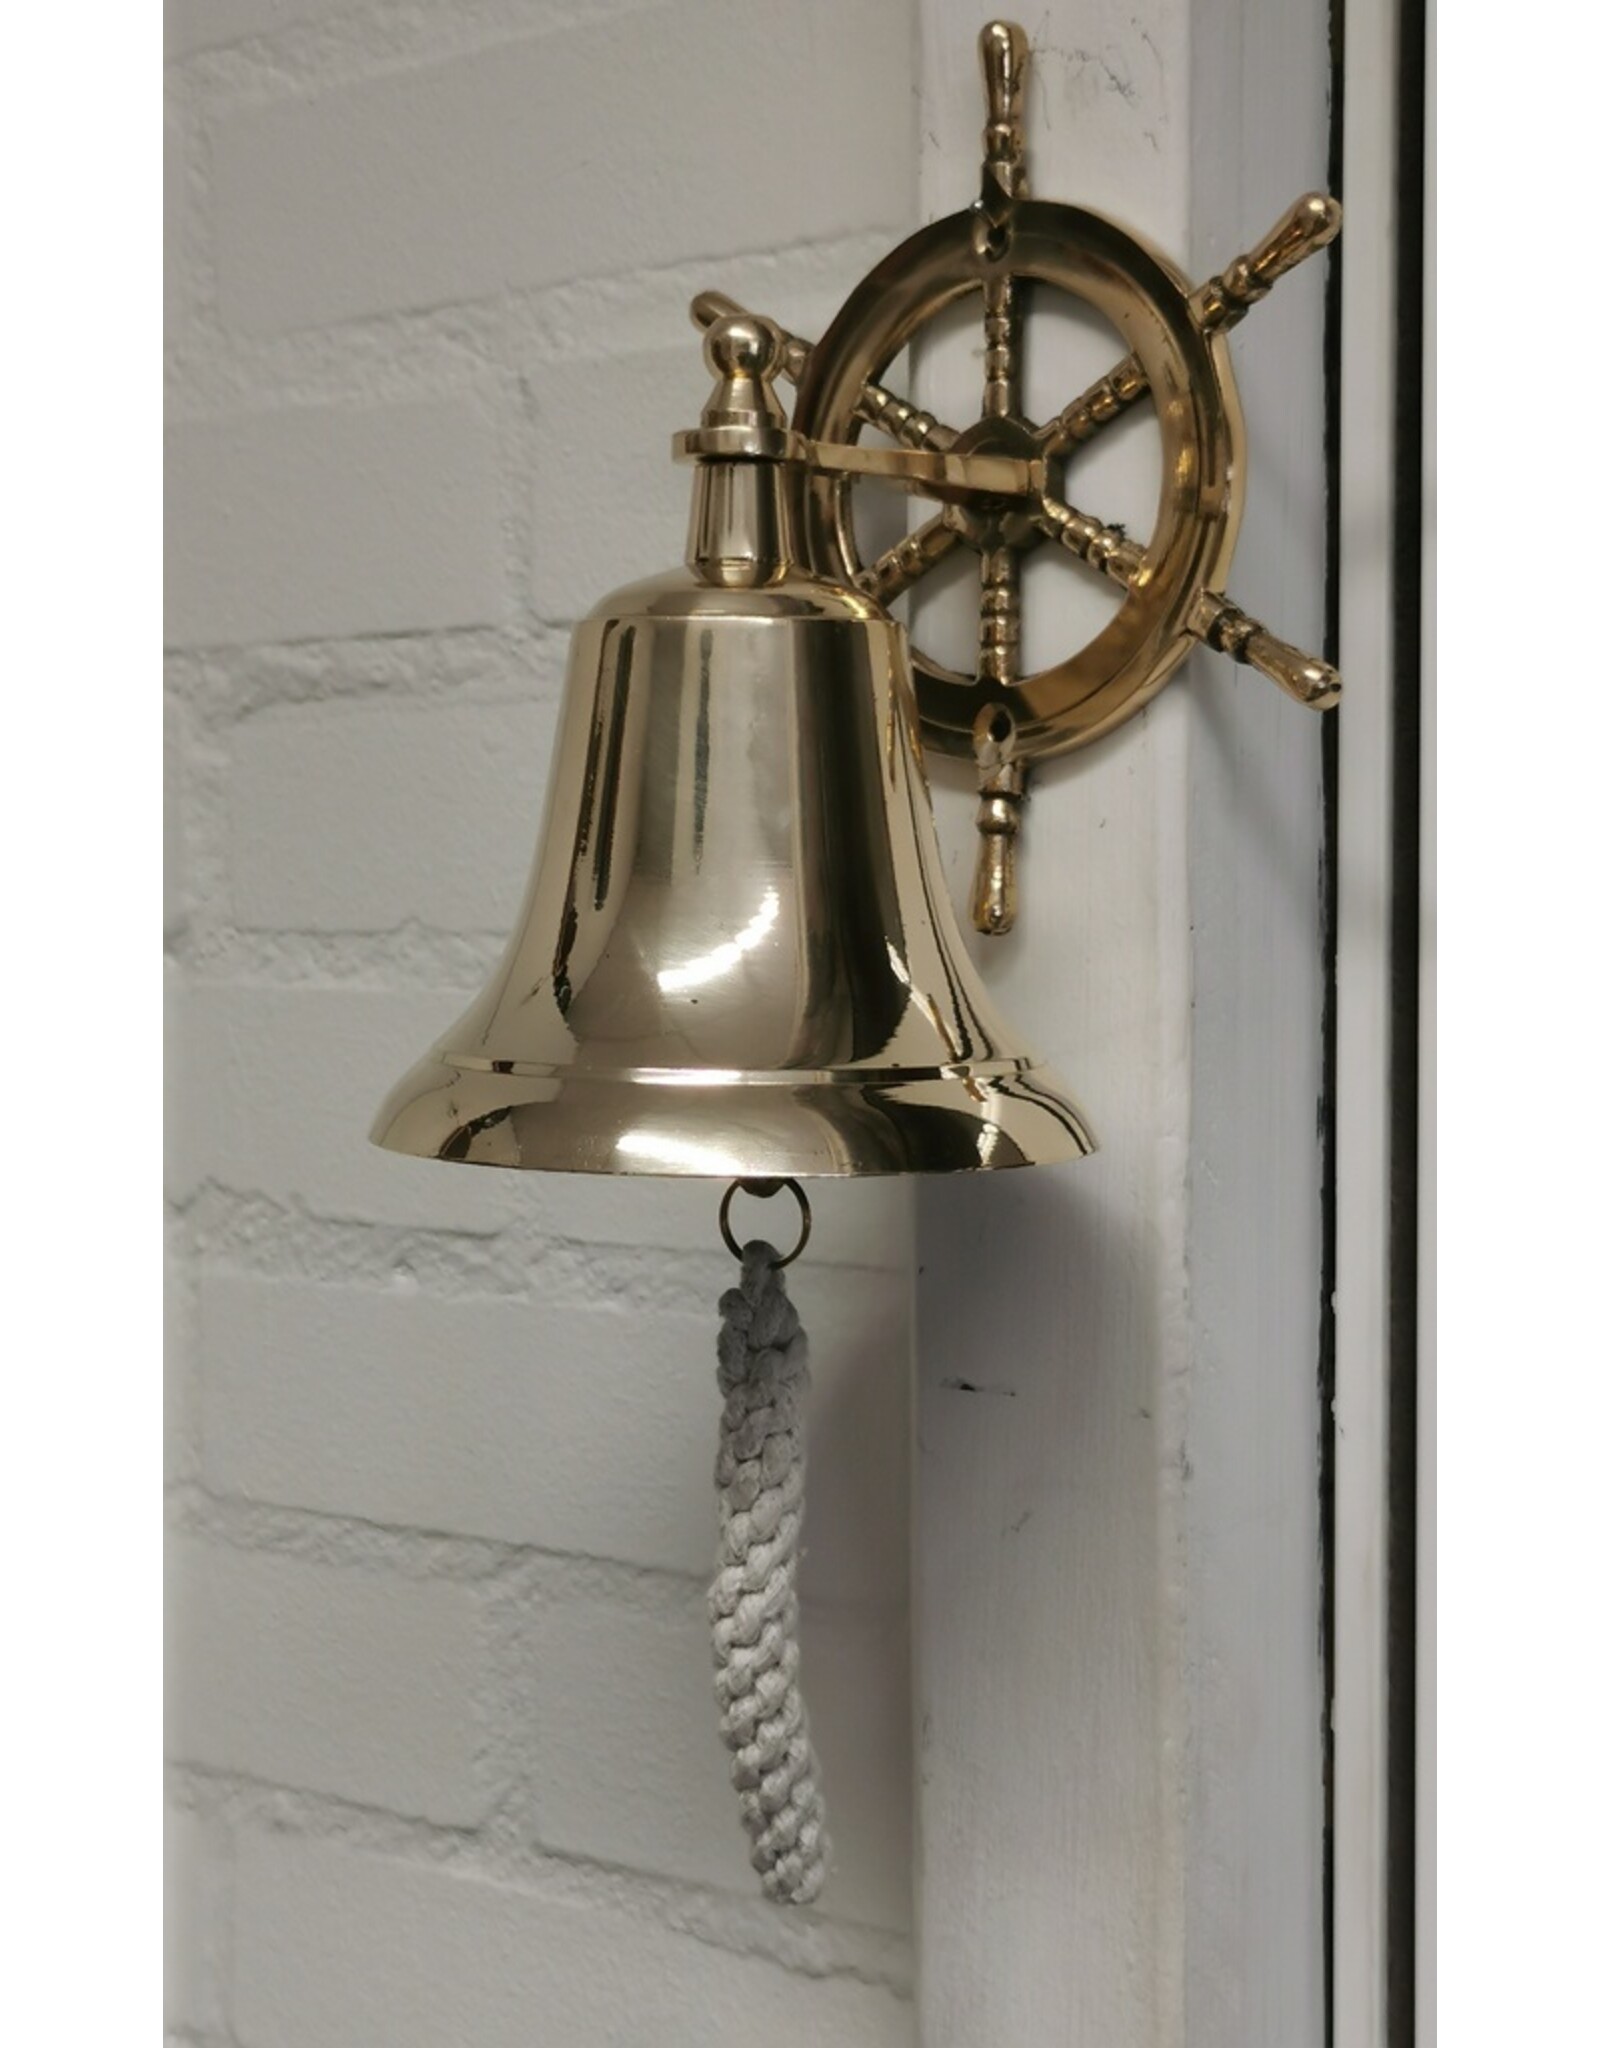 Trukado Miscellaneous - Ship's bell Brass - Front doorbell